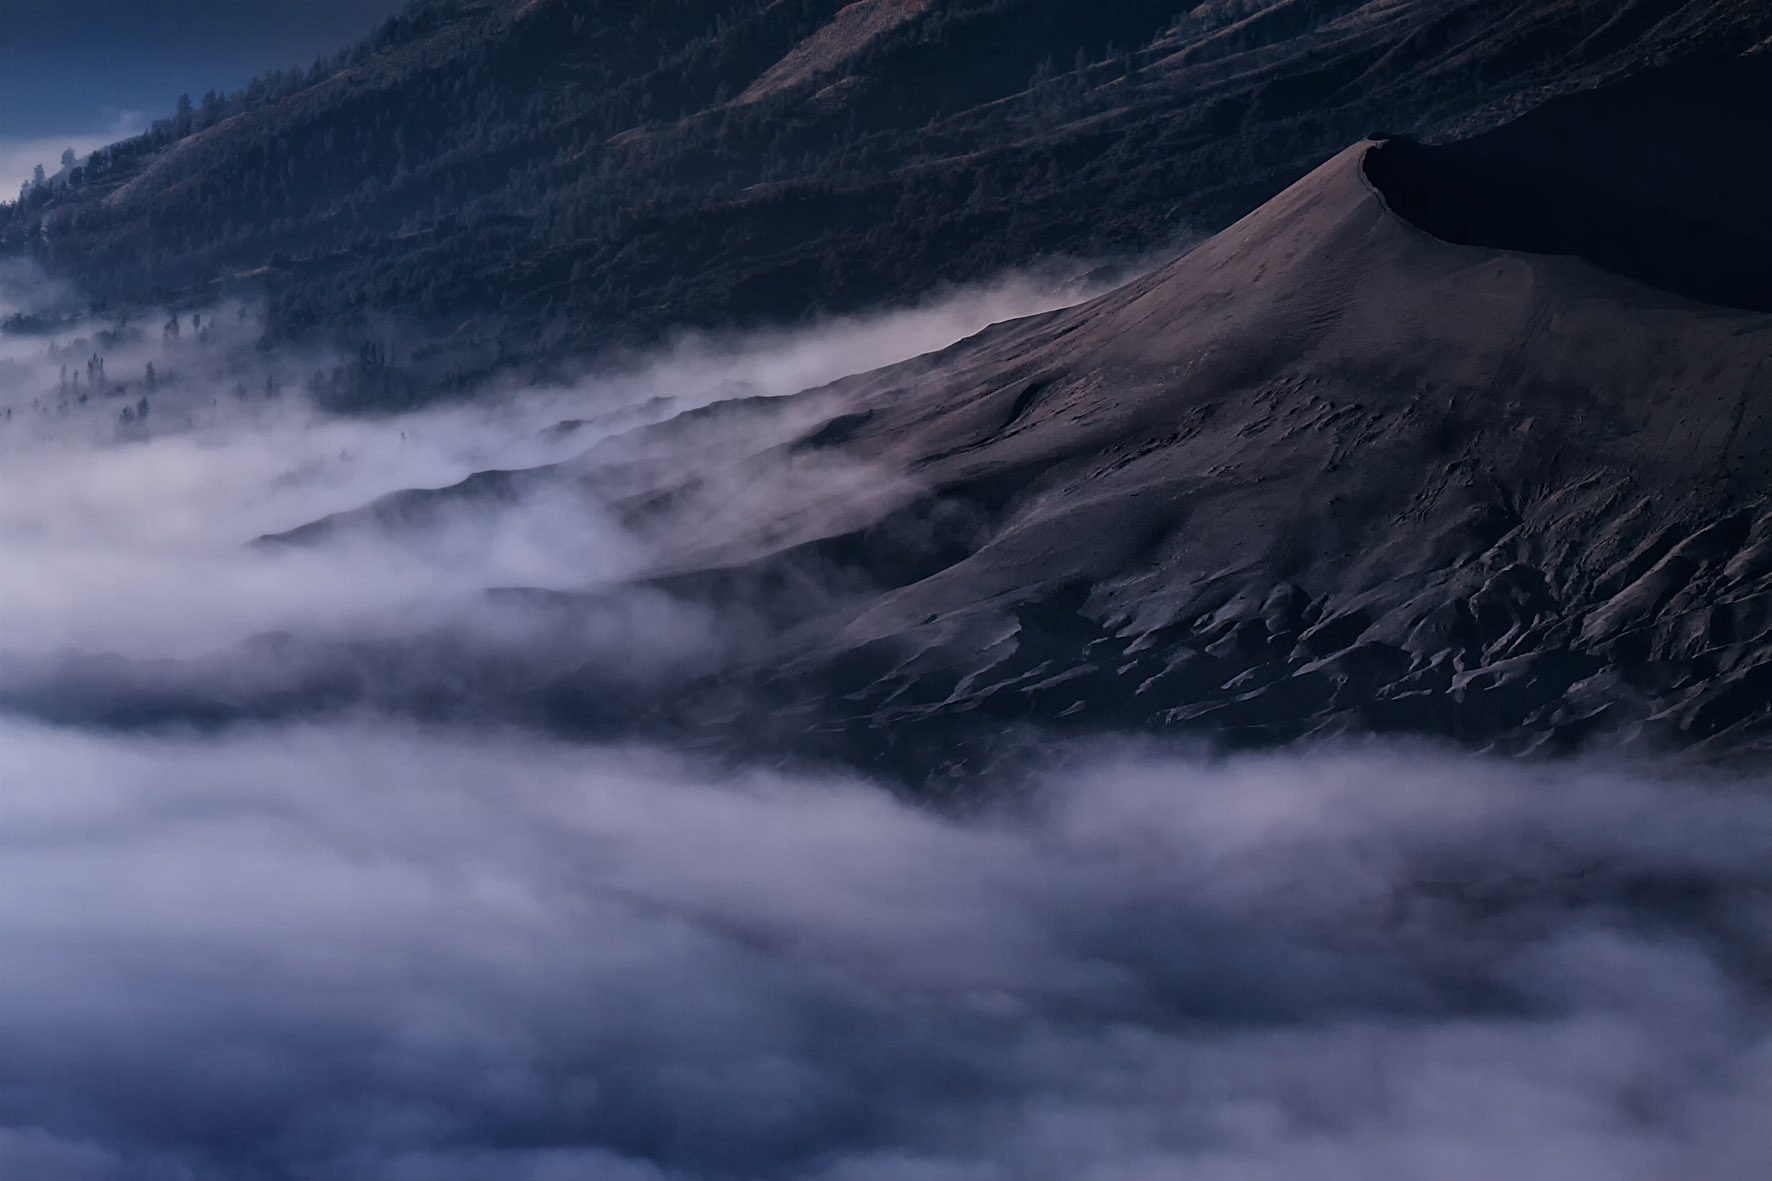 Mist in the caldera around Mount Bromo